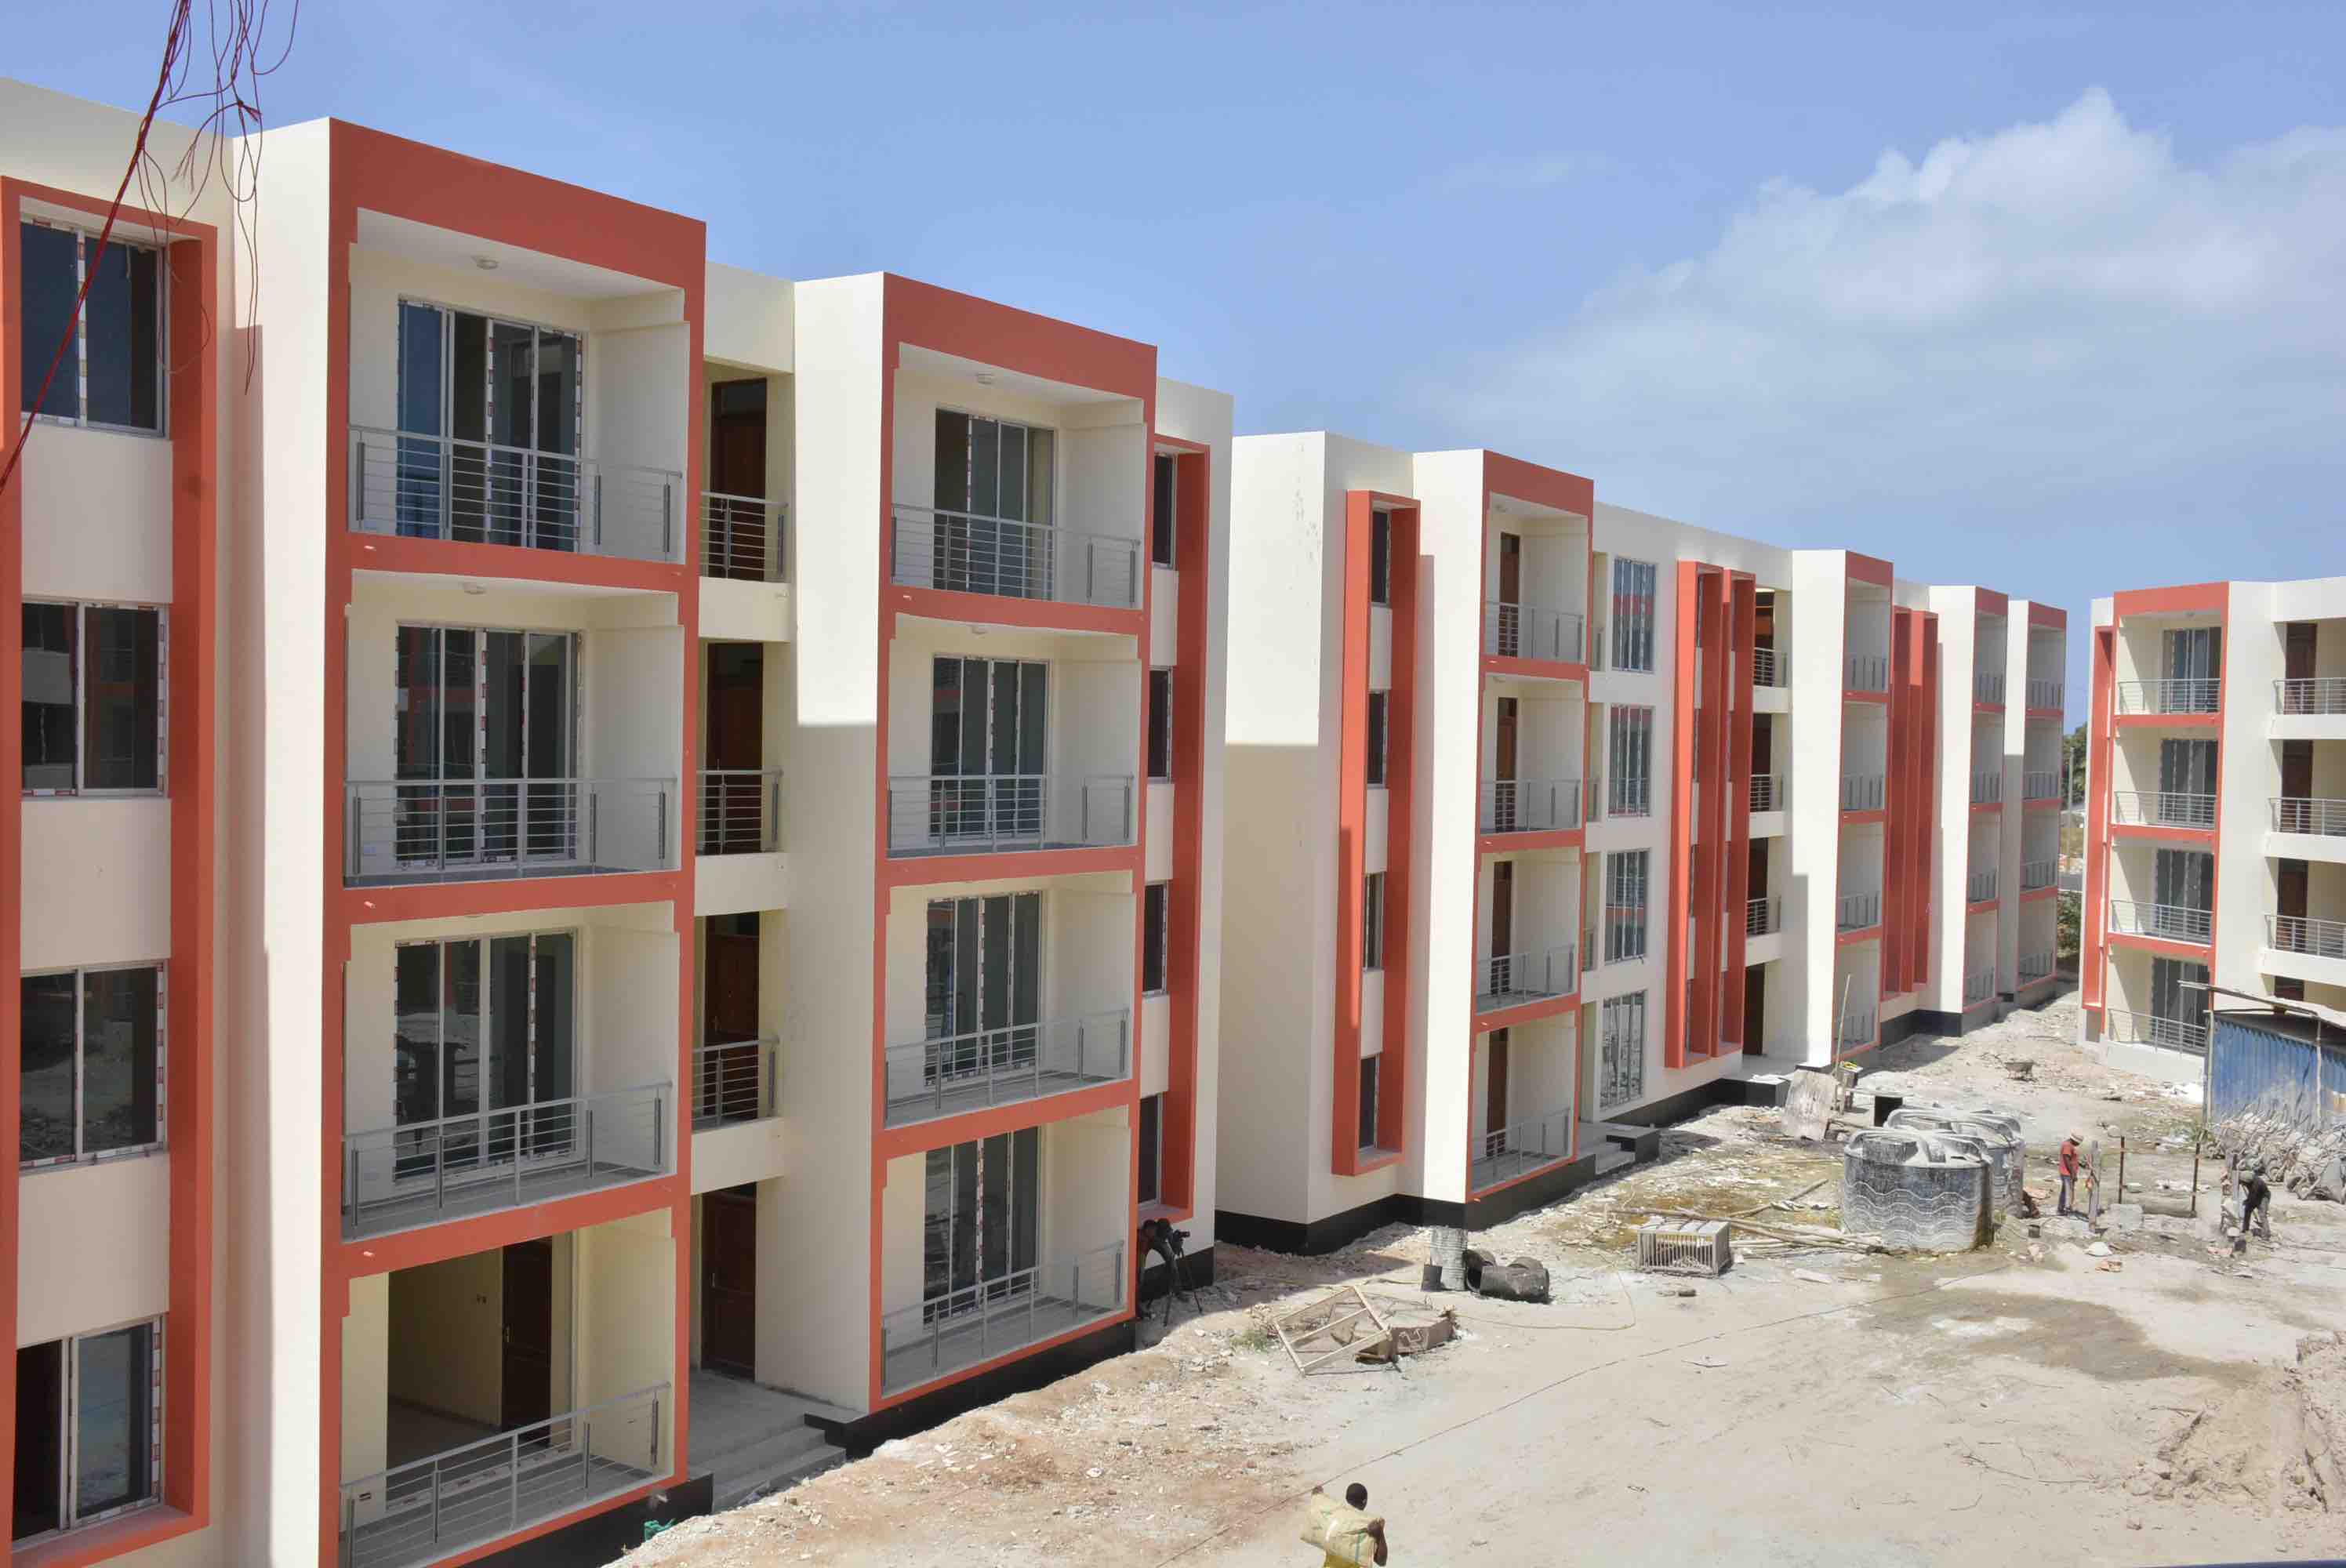 Affordable Housing Project | Kalimba Luana, Angola